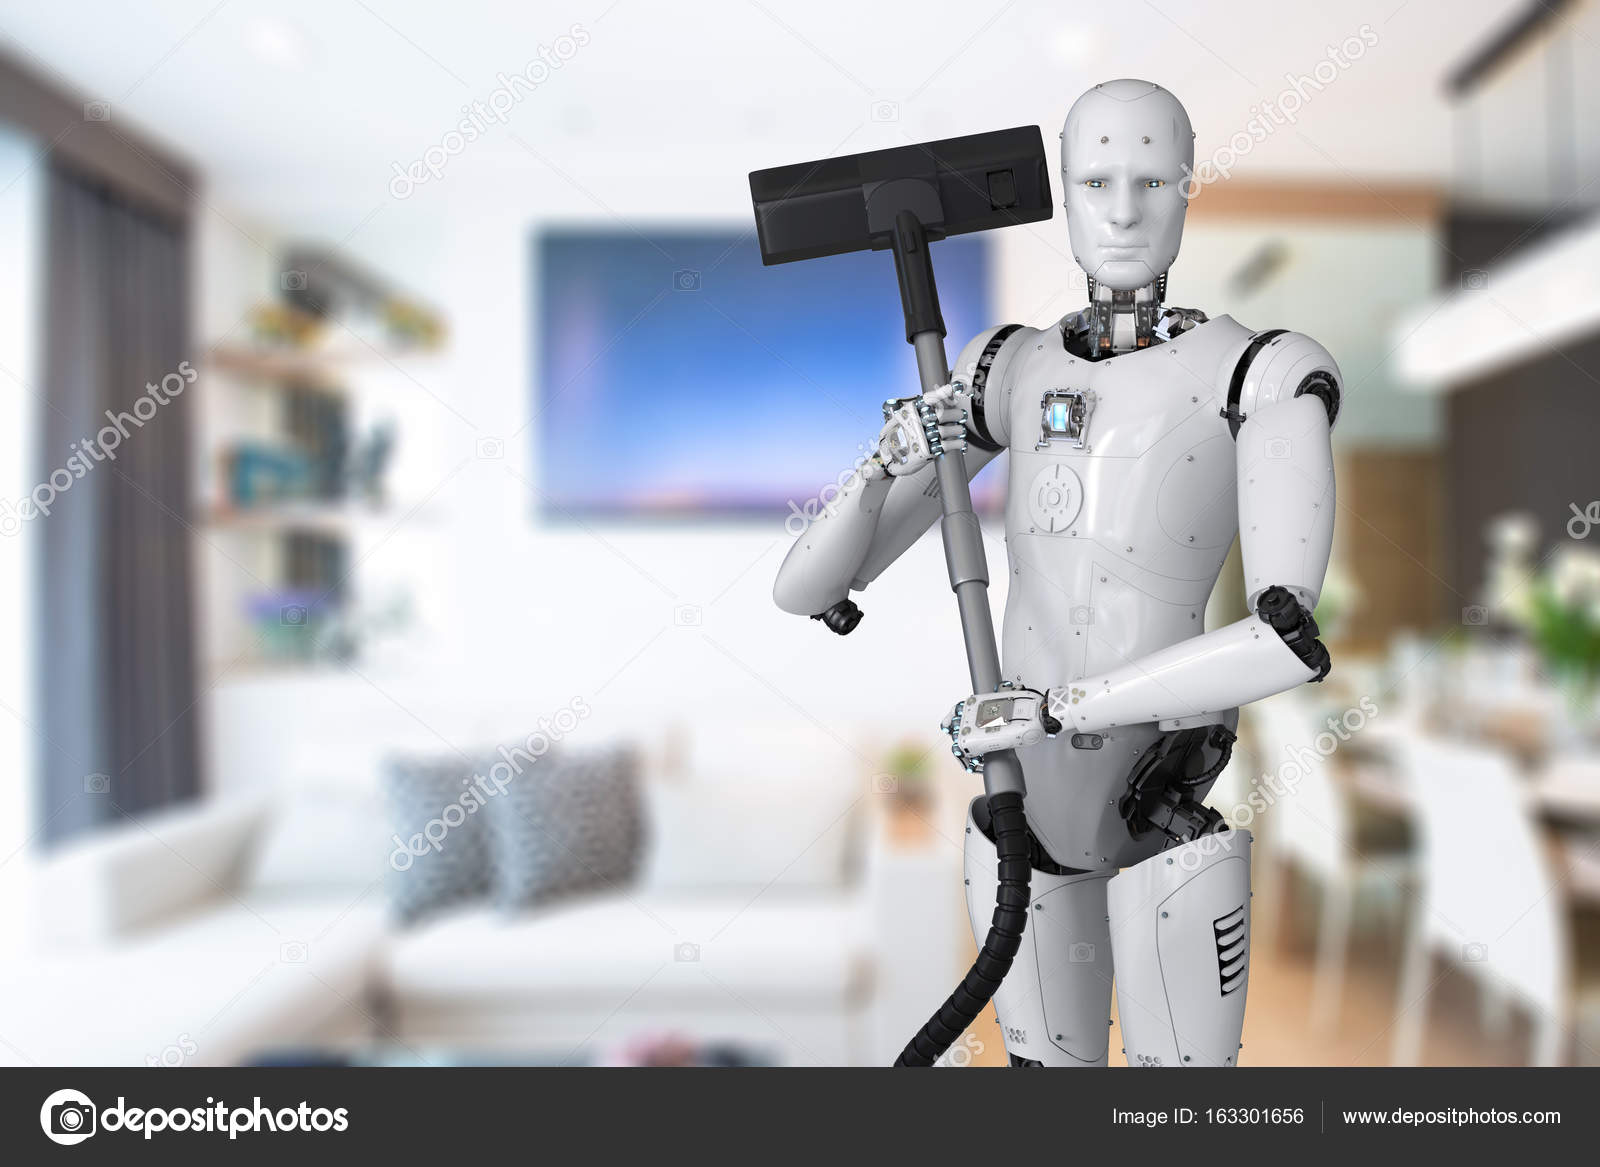 Бытовые роботы это. Роботы исследователи. Бытовые роботы. Робот уборщик будущего. Робот помощник по дому.